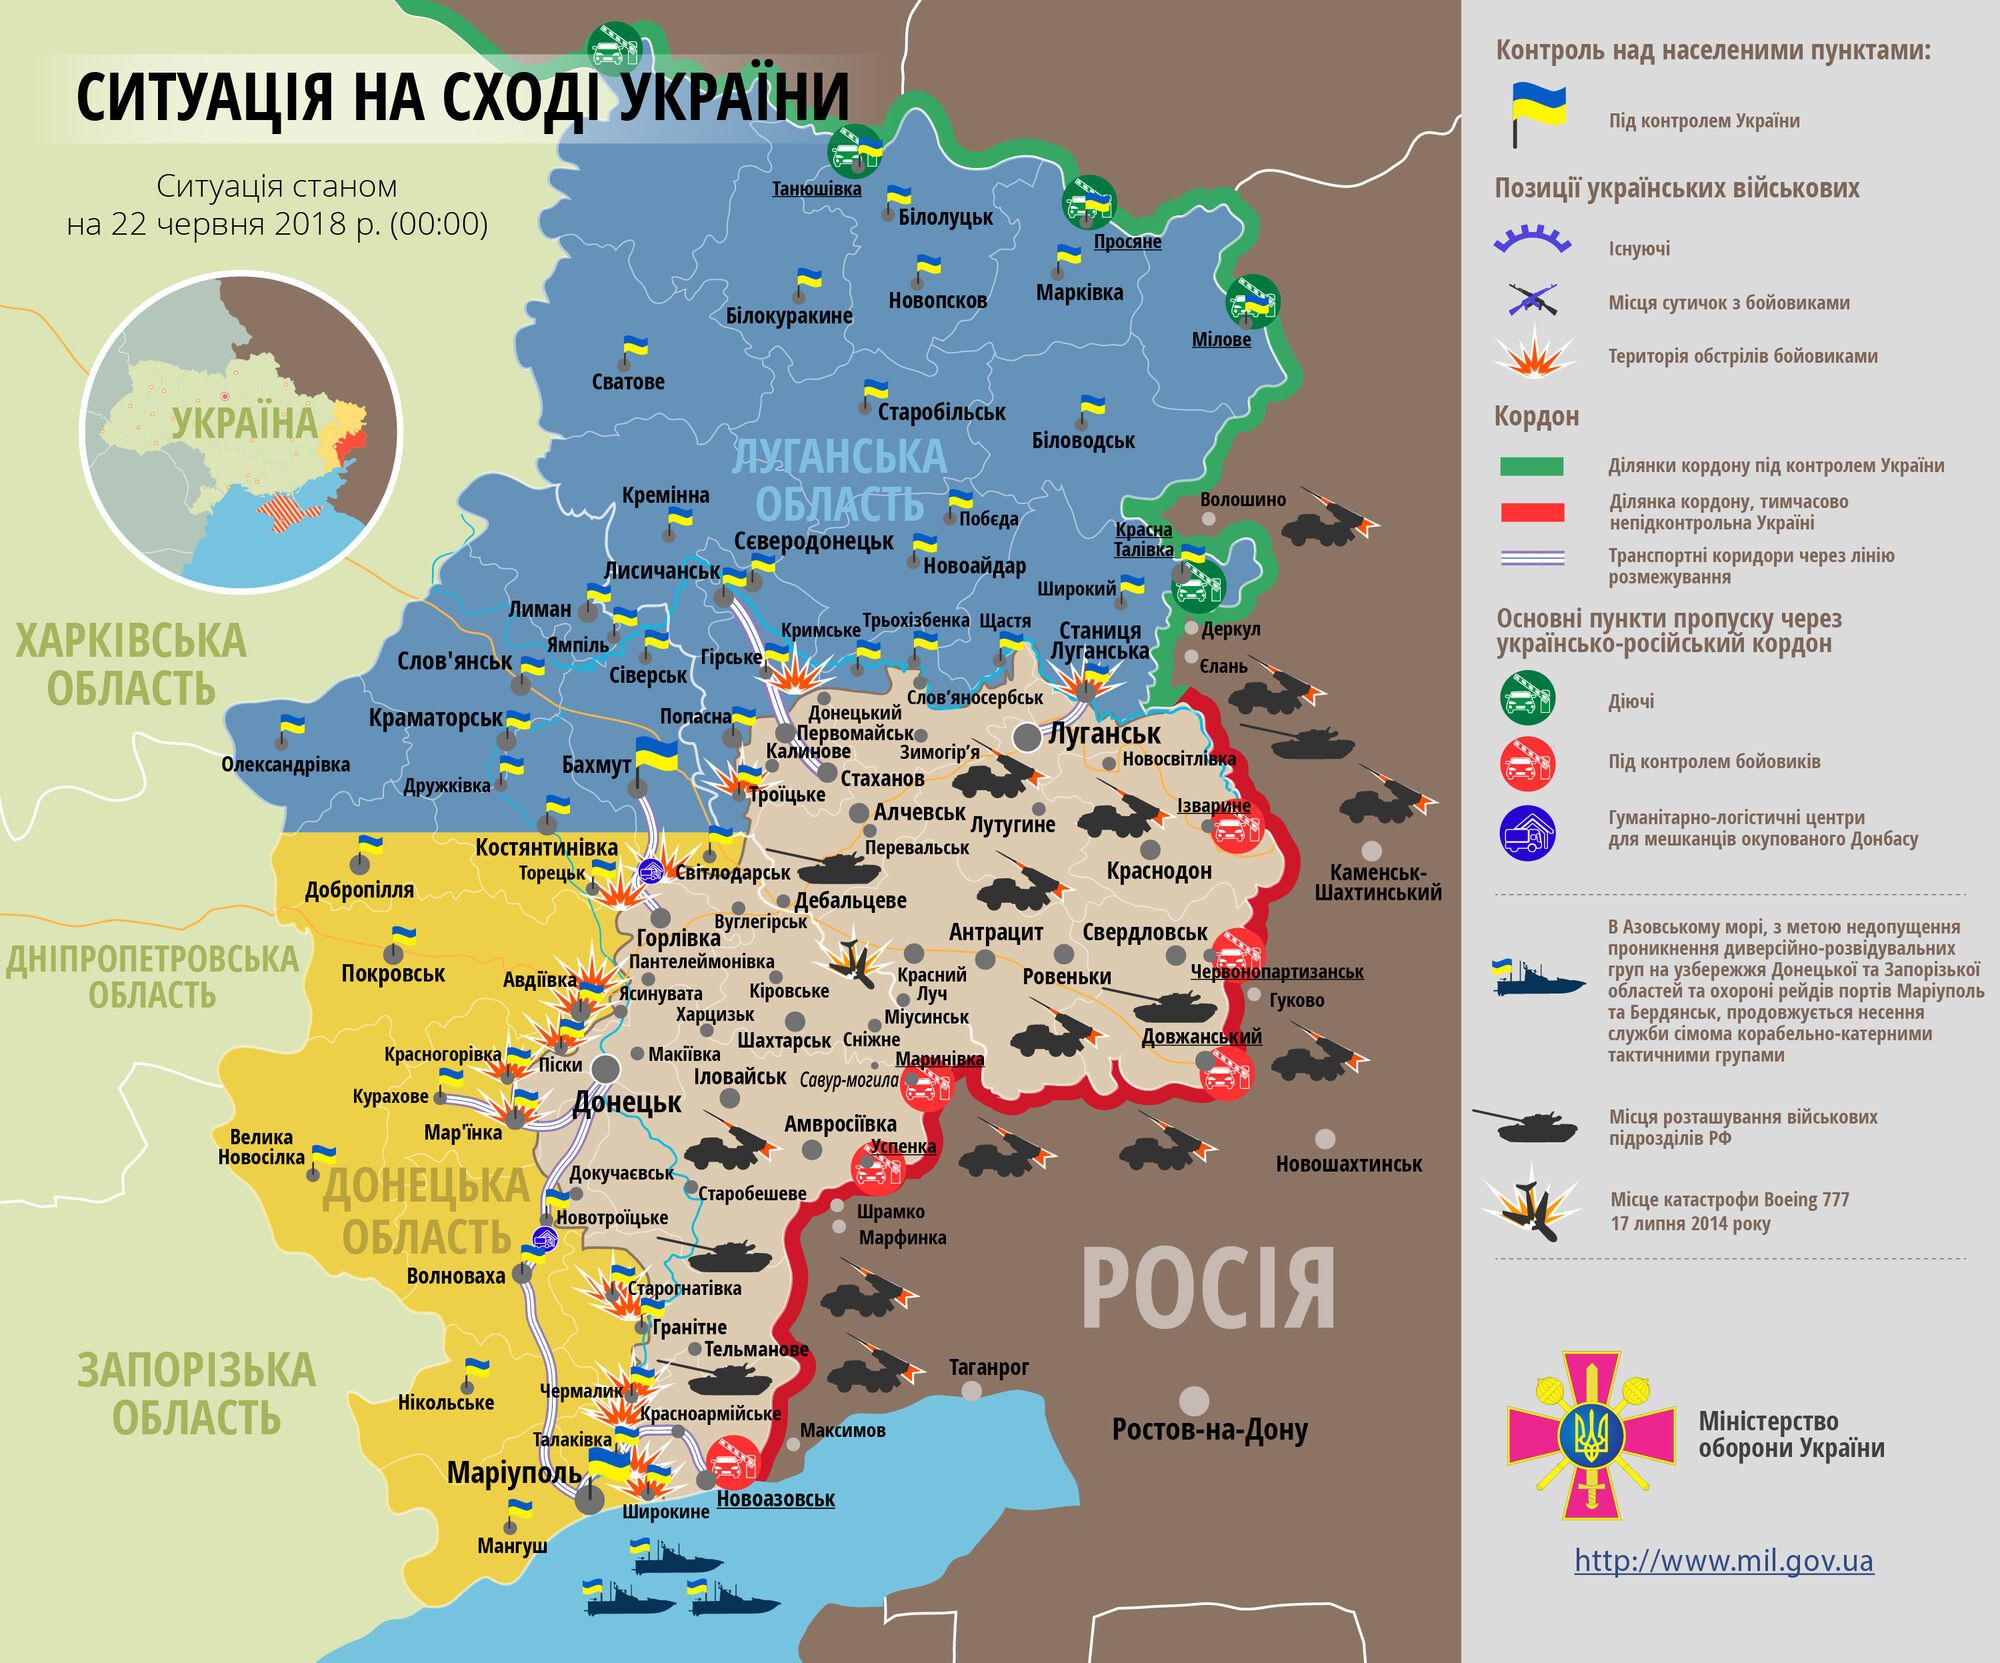  Не прорваться: ВСУ отстояли позиции на Донбассе